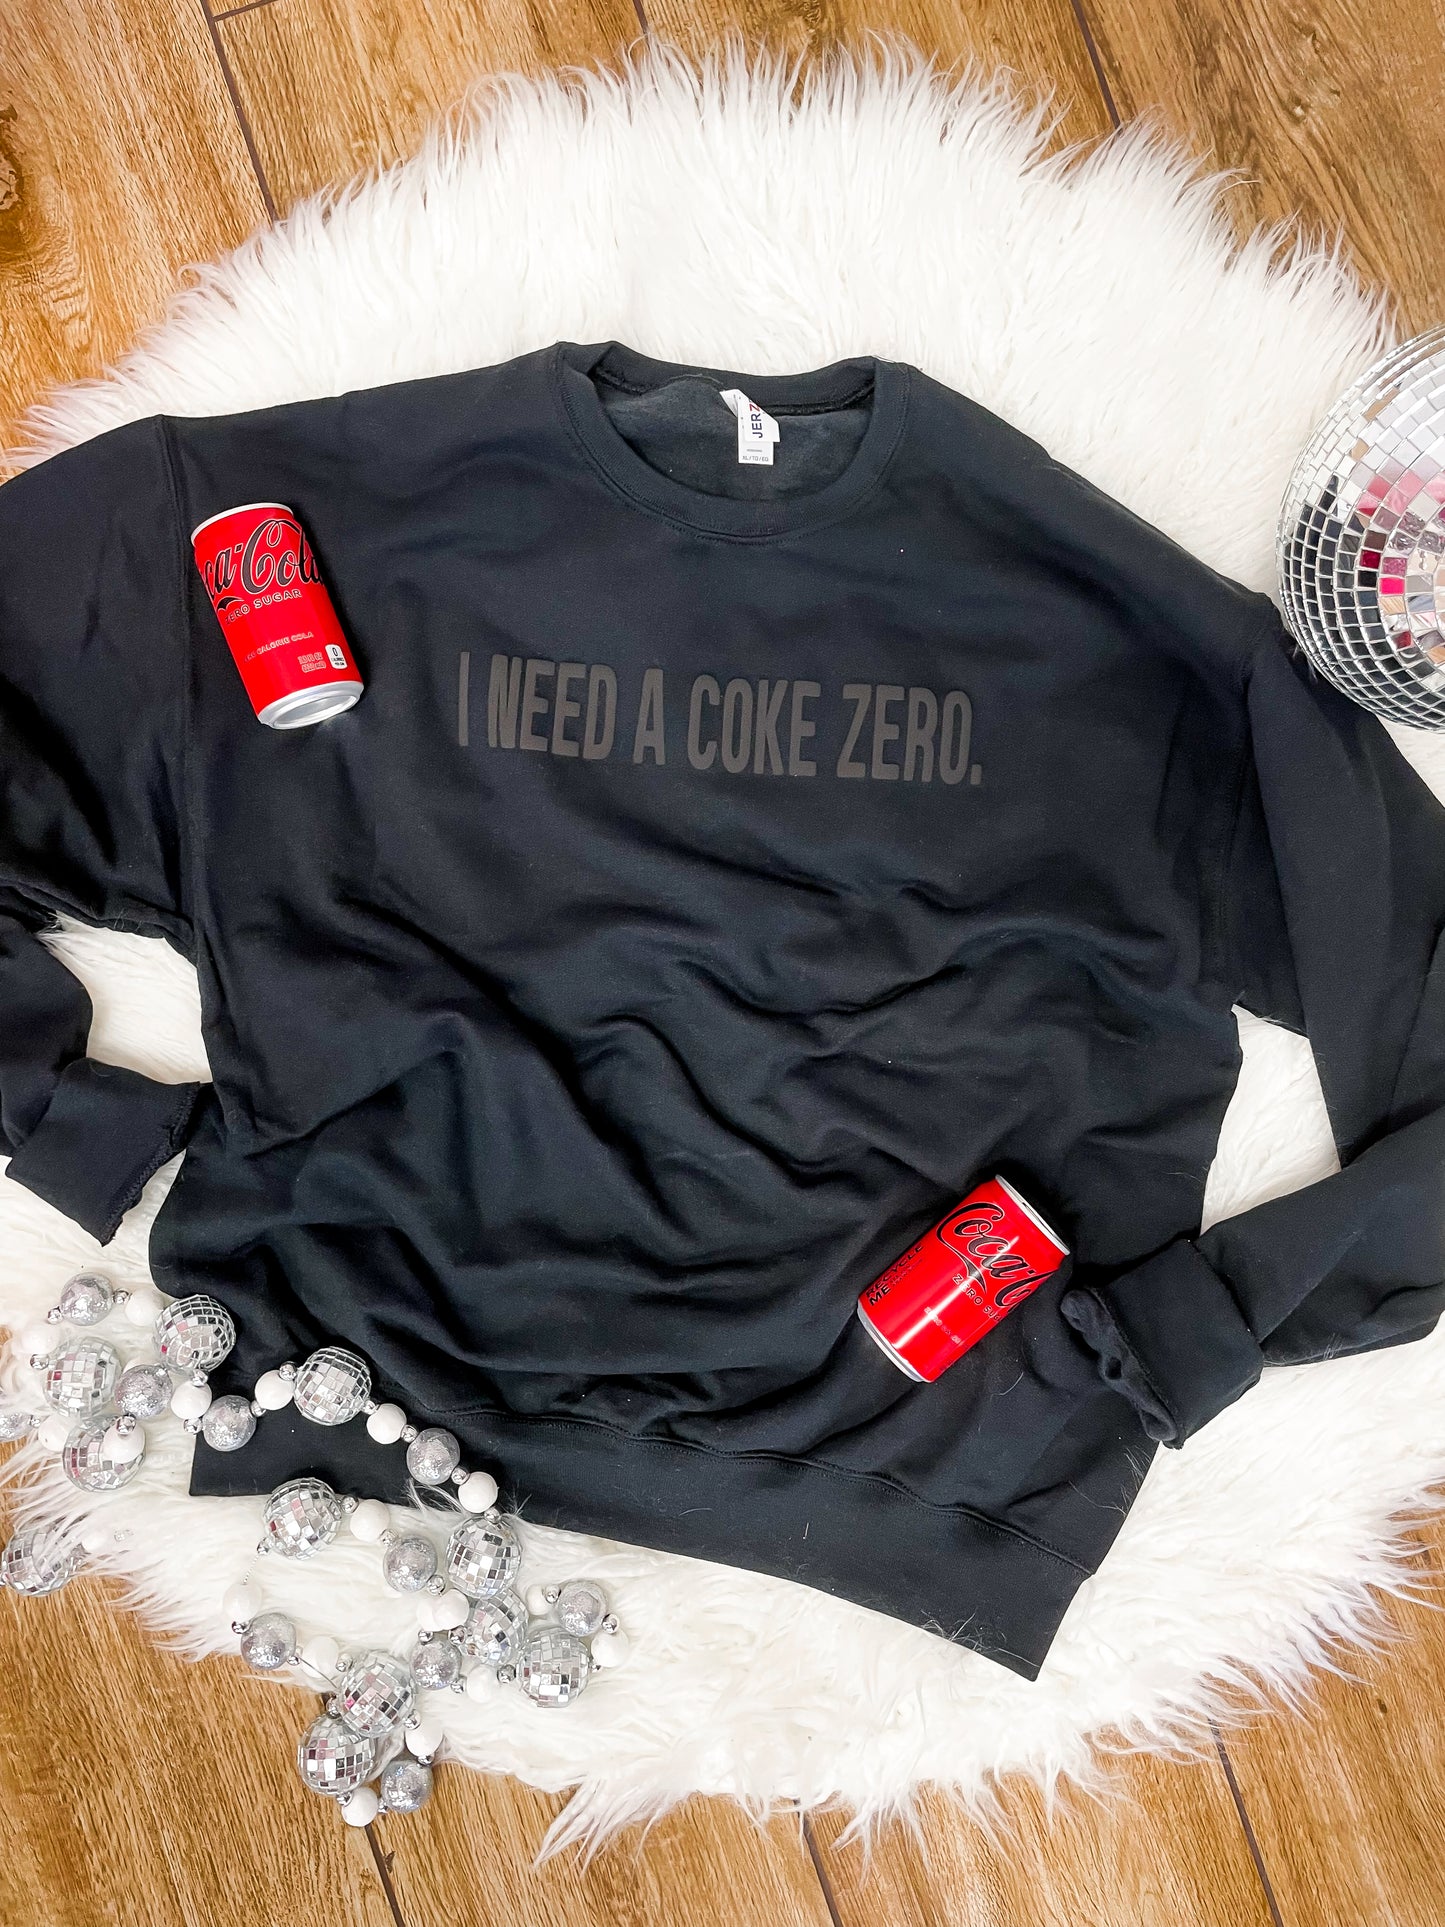 I Need a Coke Zero Sweatshirt